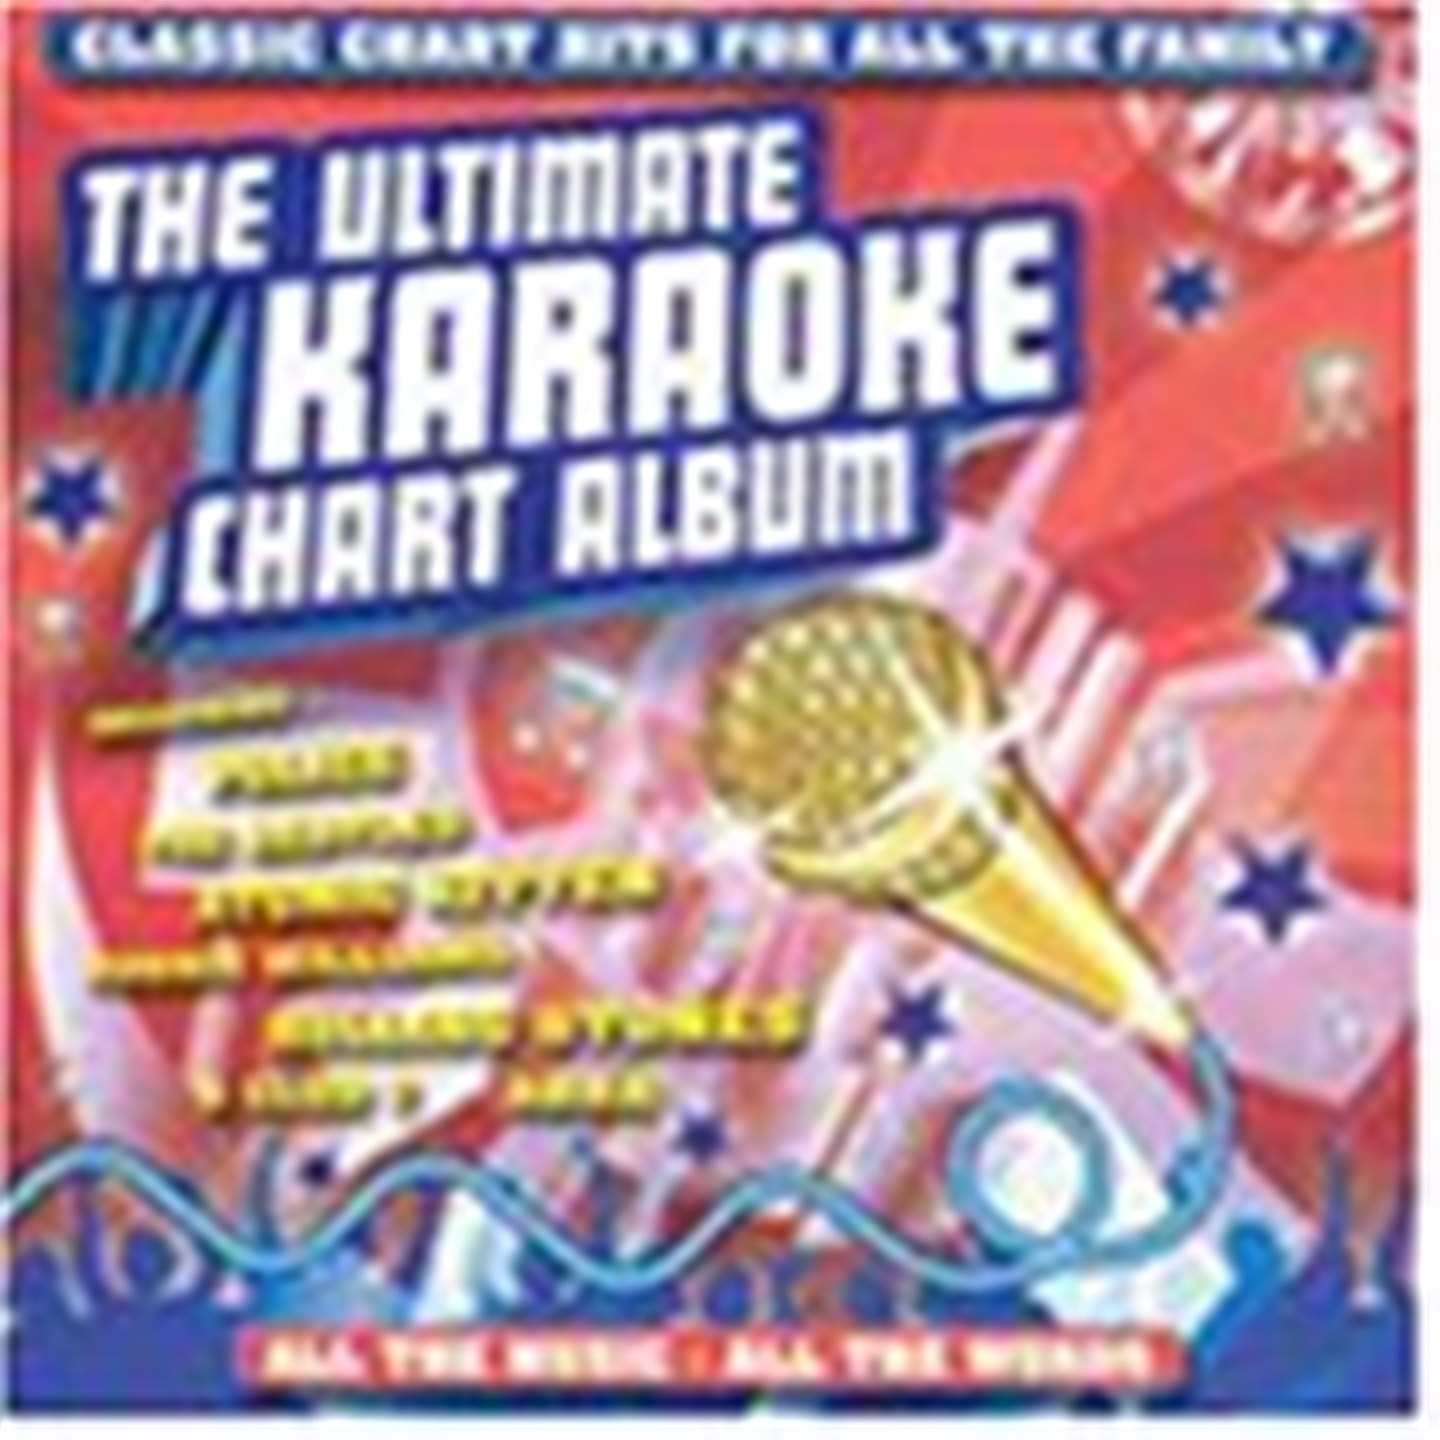 ULTIMATE KARAOKE CHART ALBUM